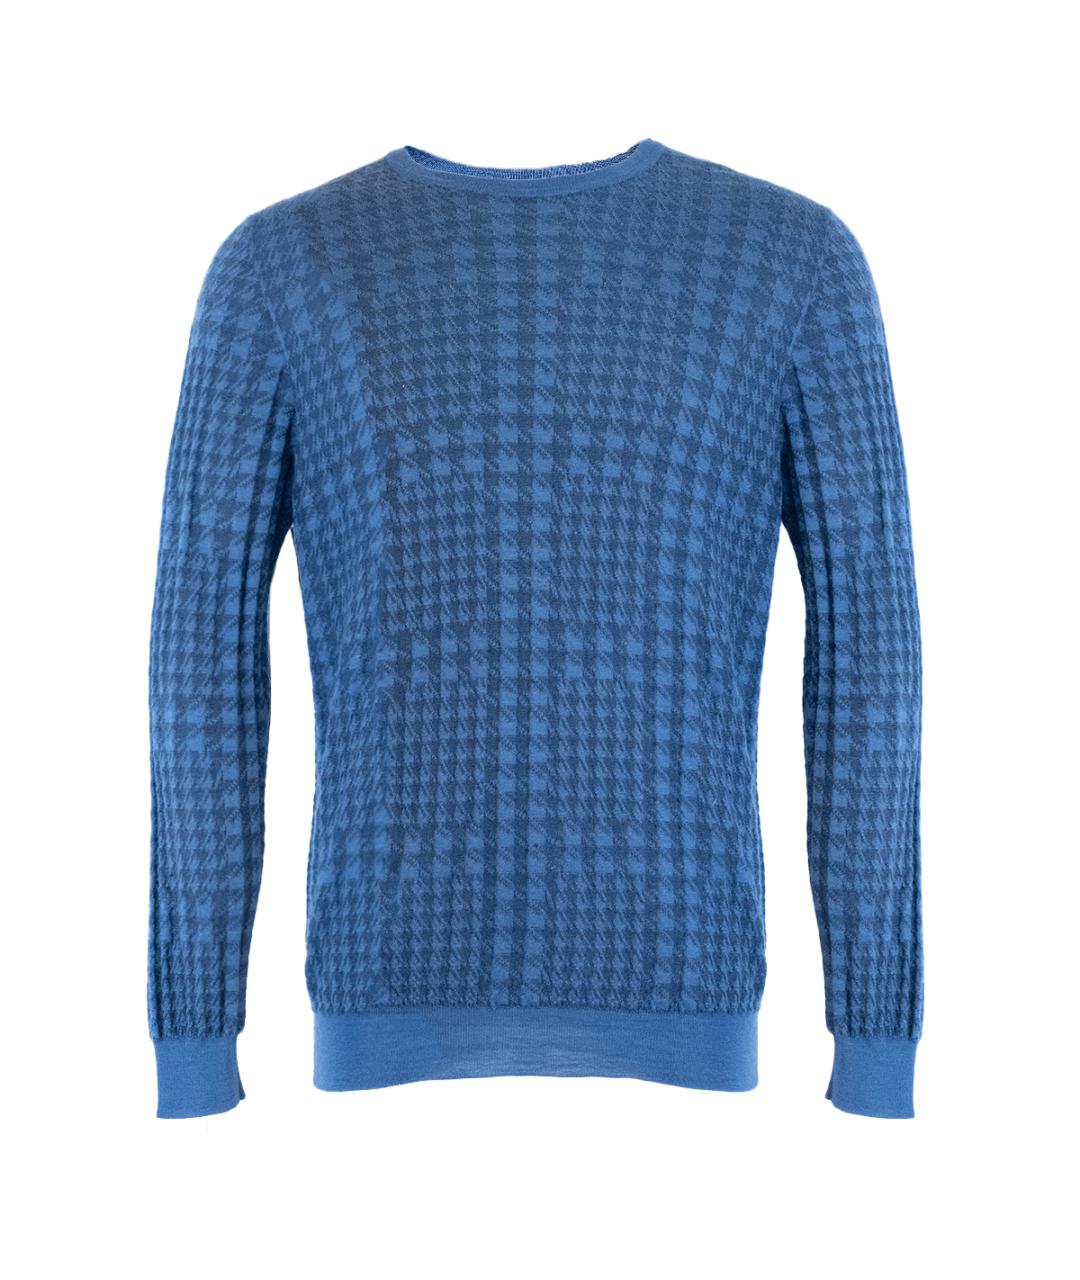 ZILLI Синий кашемировый джемпер / свитер, фото 1